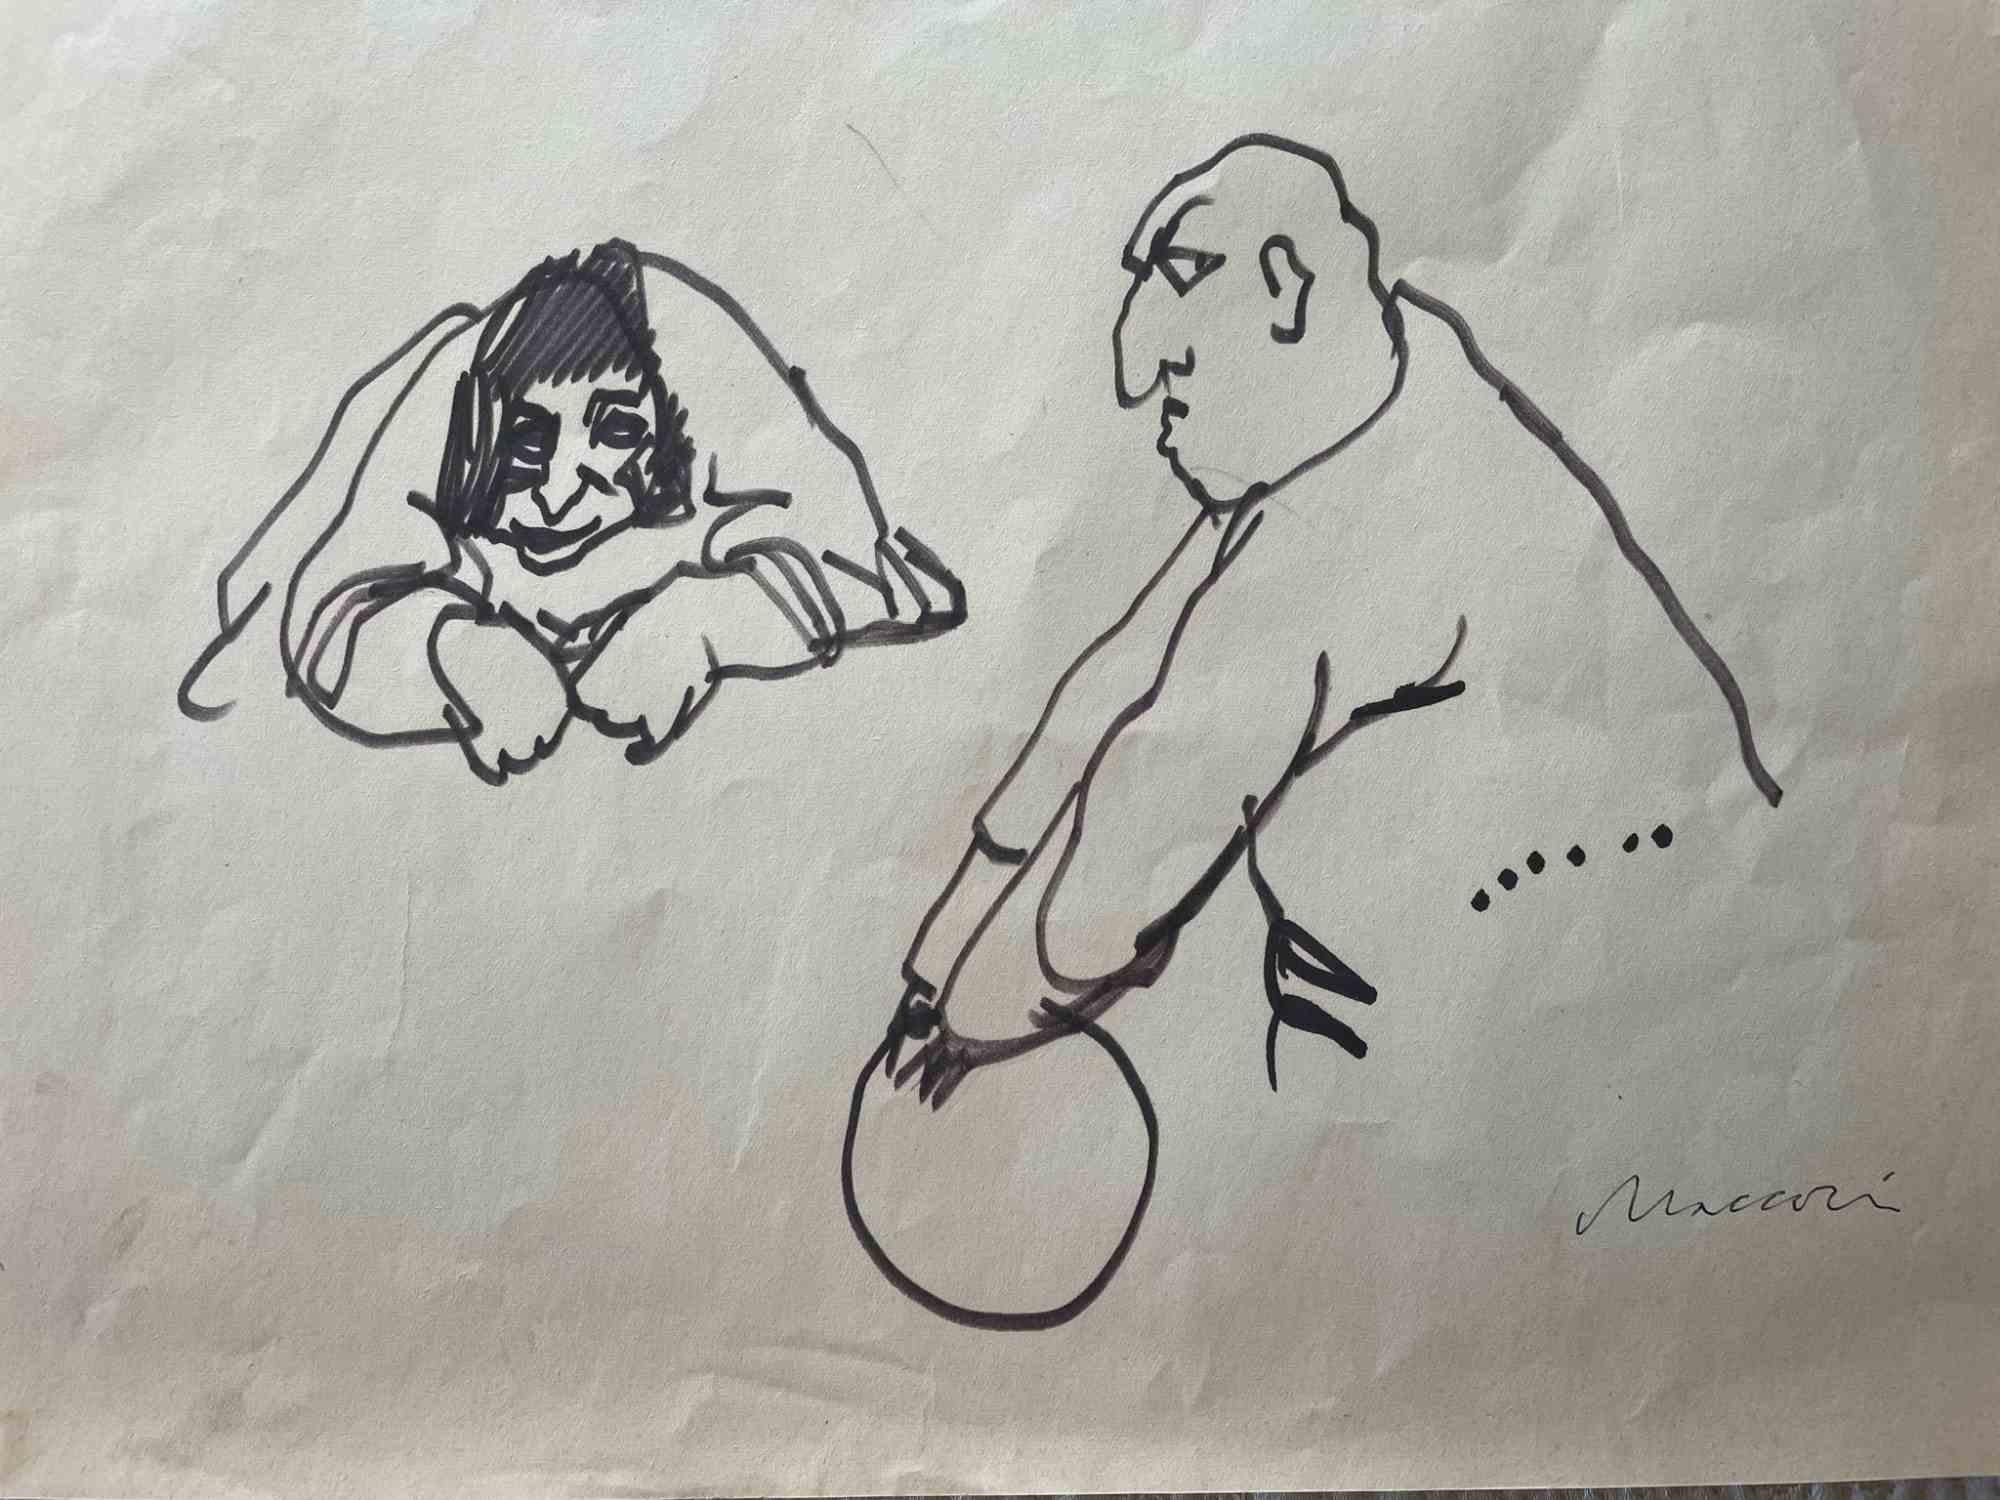 Figuren ist ein Kunstwerk von Mino Maccari (1924-1989) aus dem Jahr 1960.

Zeichenstift auf vergilbtem Papier. Handsigniert am unteren rechten Rand.

Gute Bedingungen.

Mino Maccari (Siena, 1924-Rom, 16. Juni 1989) war ein italienischer